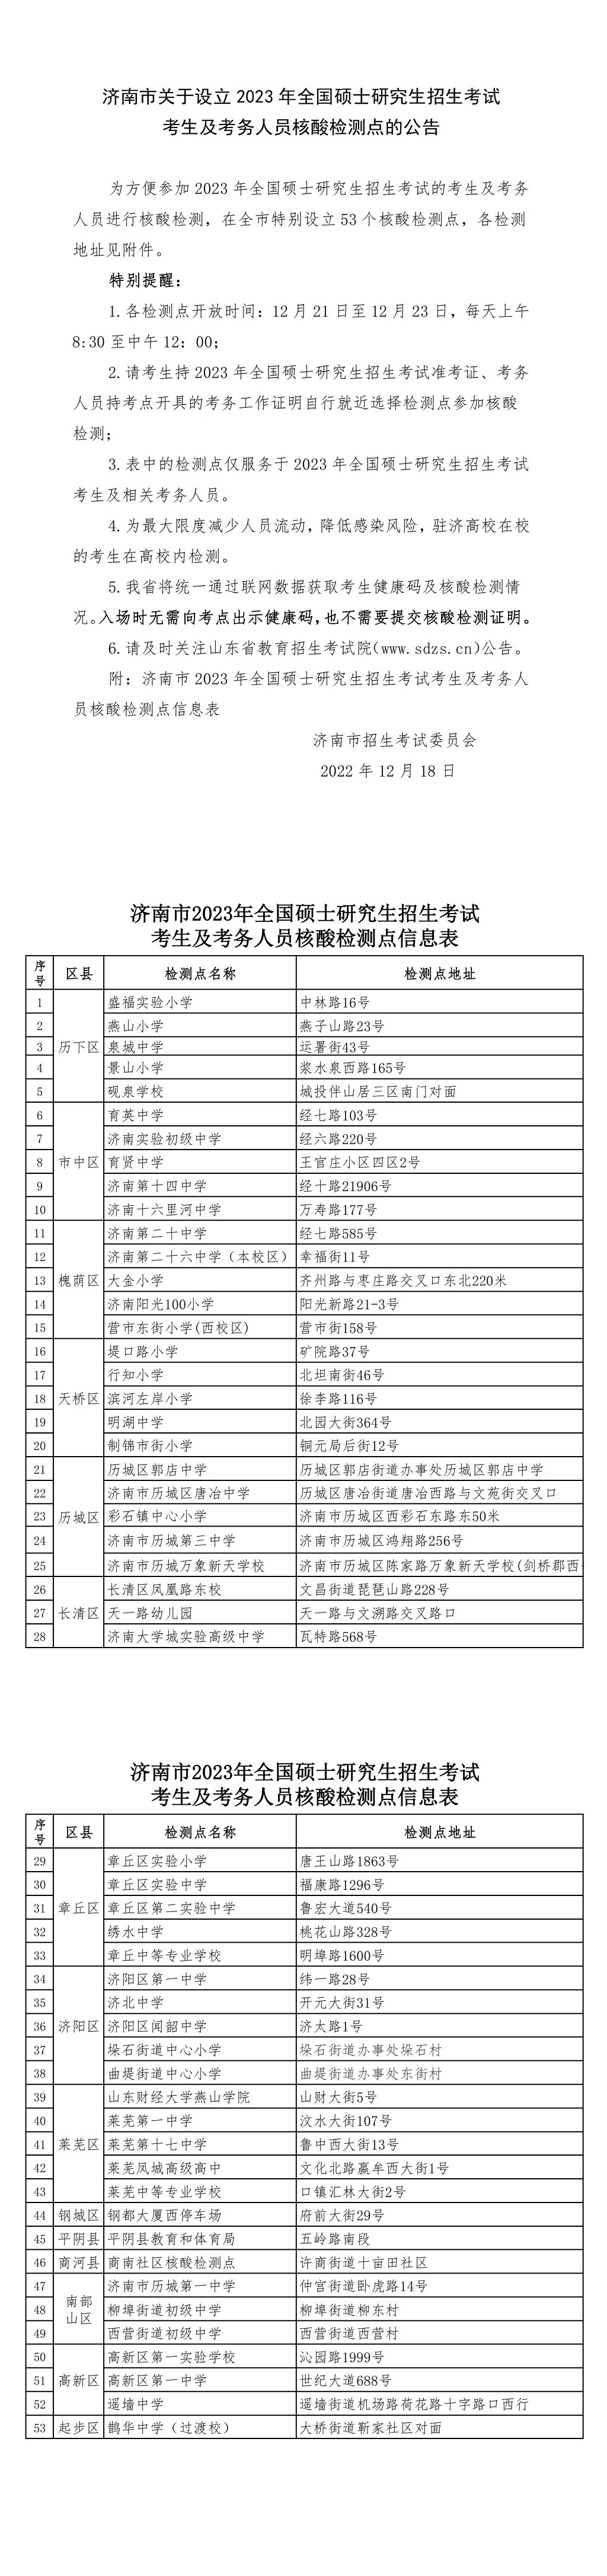 济南市关于设立2023年全国硕士研究生招生考试核酸检测点的公告-2_00.jpg